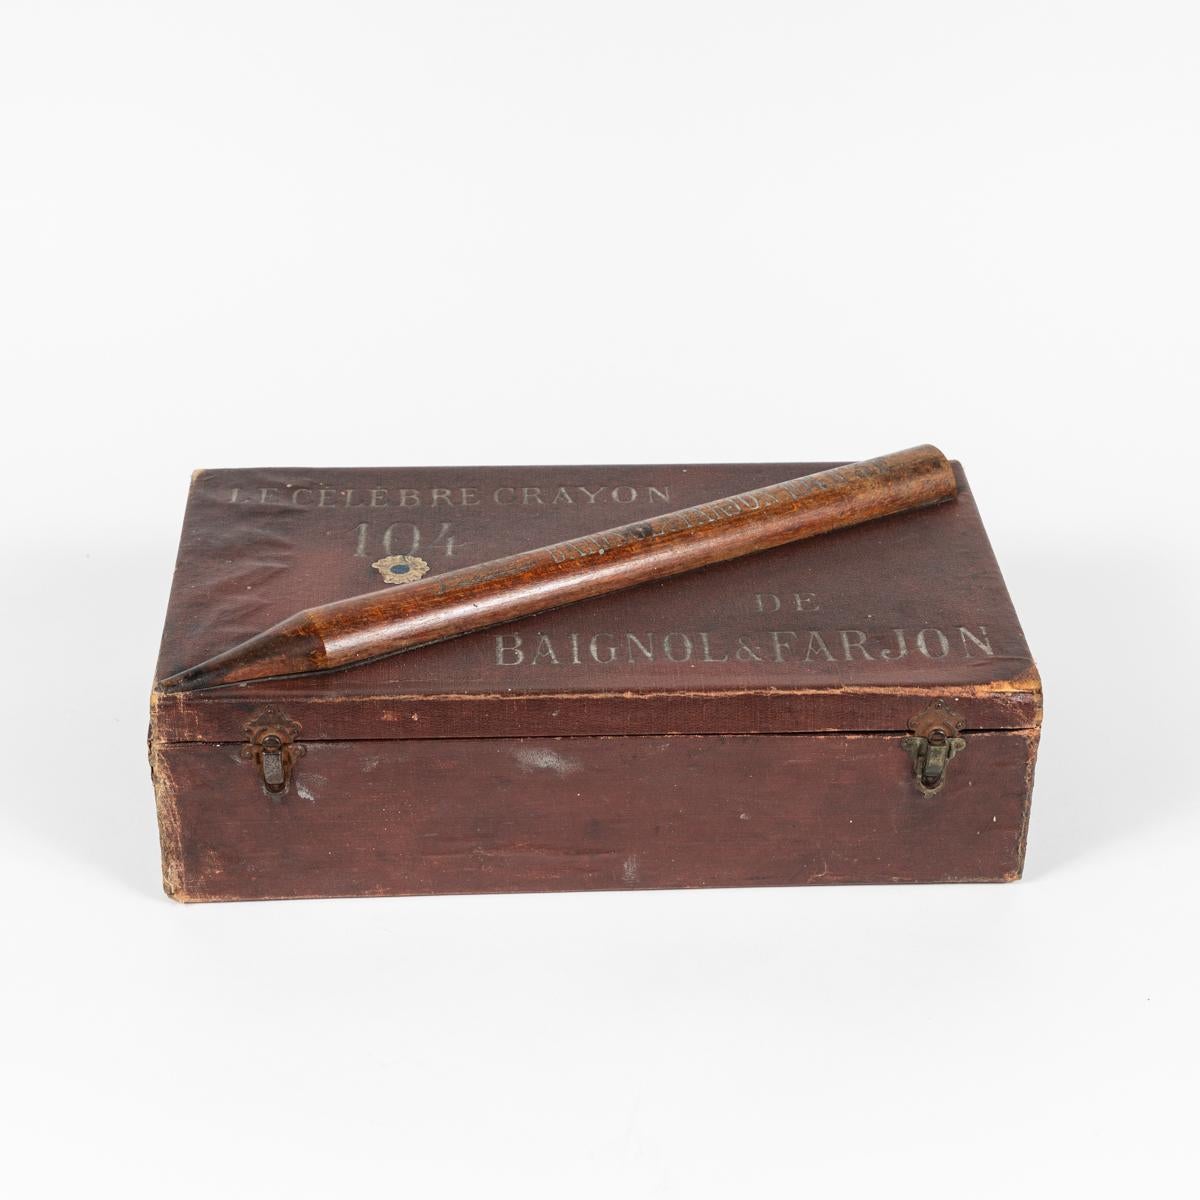 Lederschachtel für Buntstifte aus England, um 1900. Auf dem Deckel ist eine Holzkreide mit der Aufschrift 